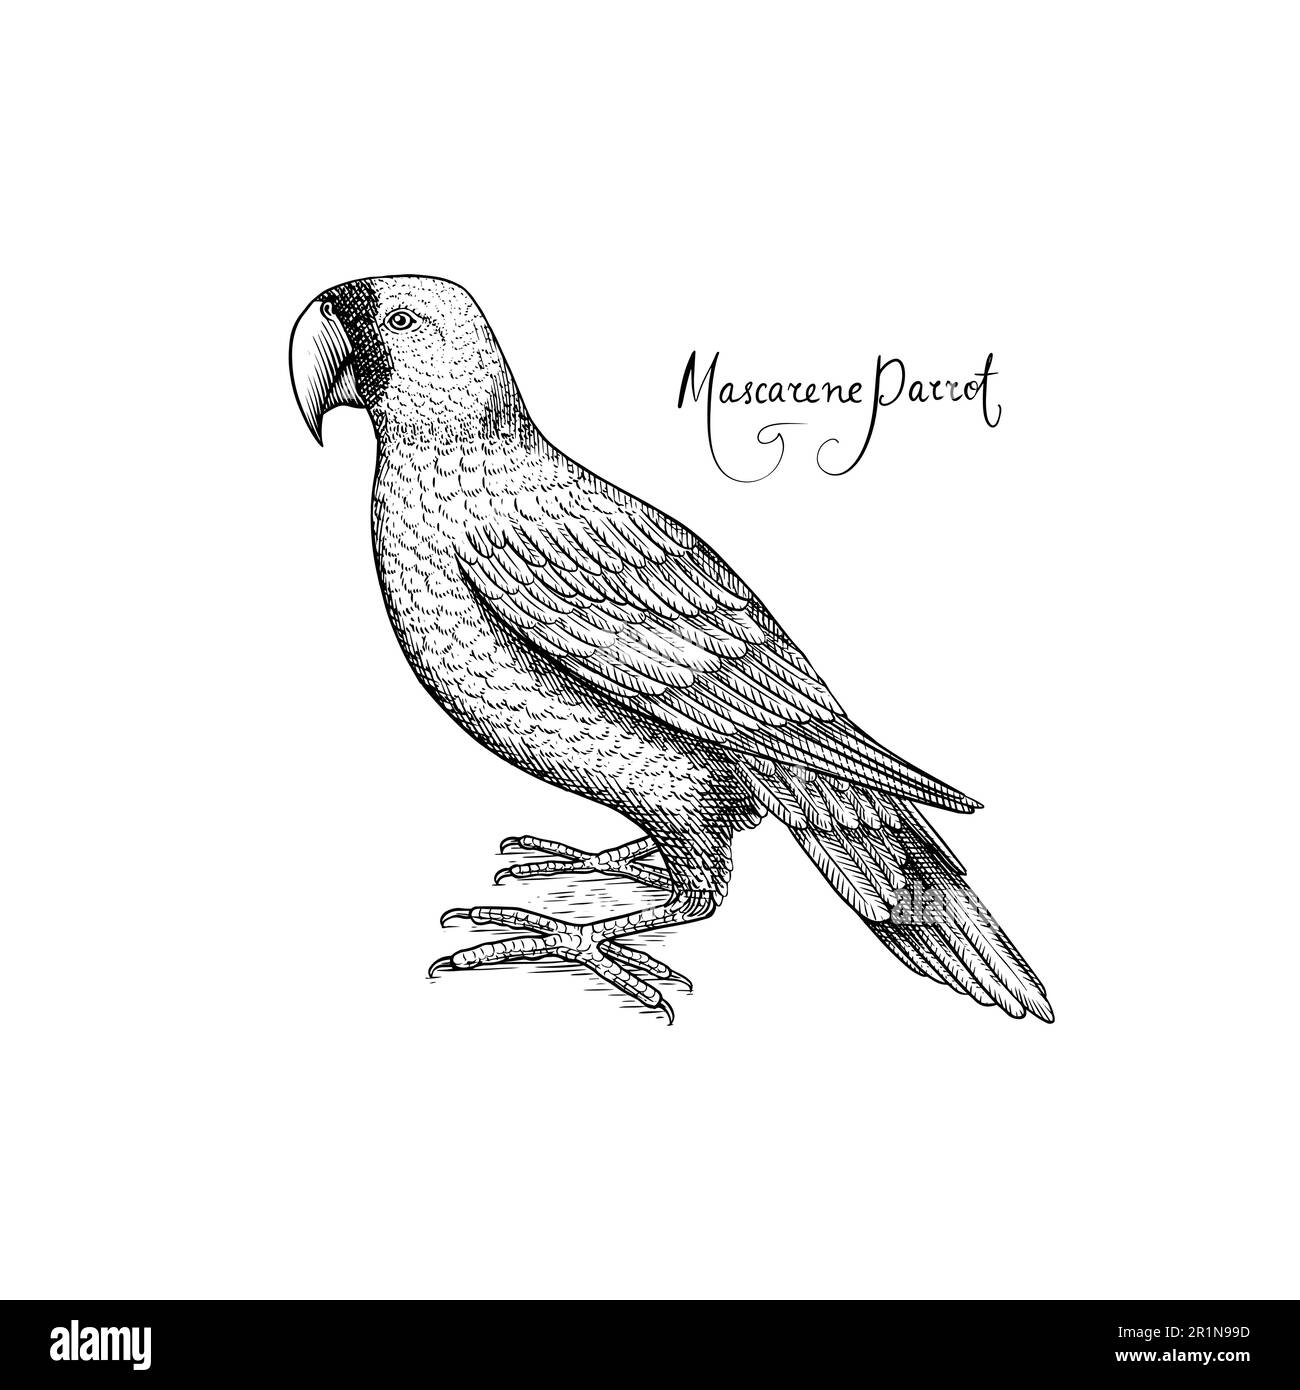 Maskaren-Papagei. Ausgestorbener Vogel. Handgezeichnete, gravierte Vektorgrafik im Vintage-Stil „Woodcut Graphic“ Stock Vektor